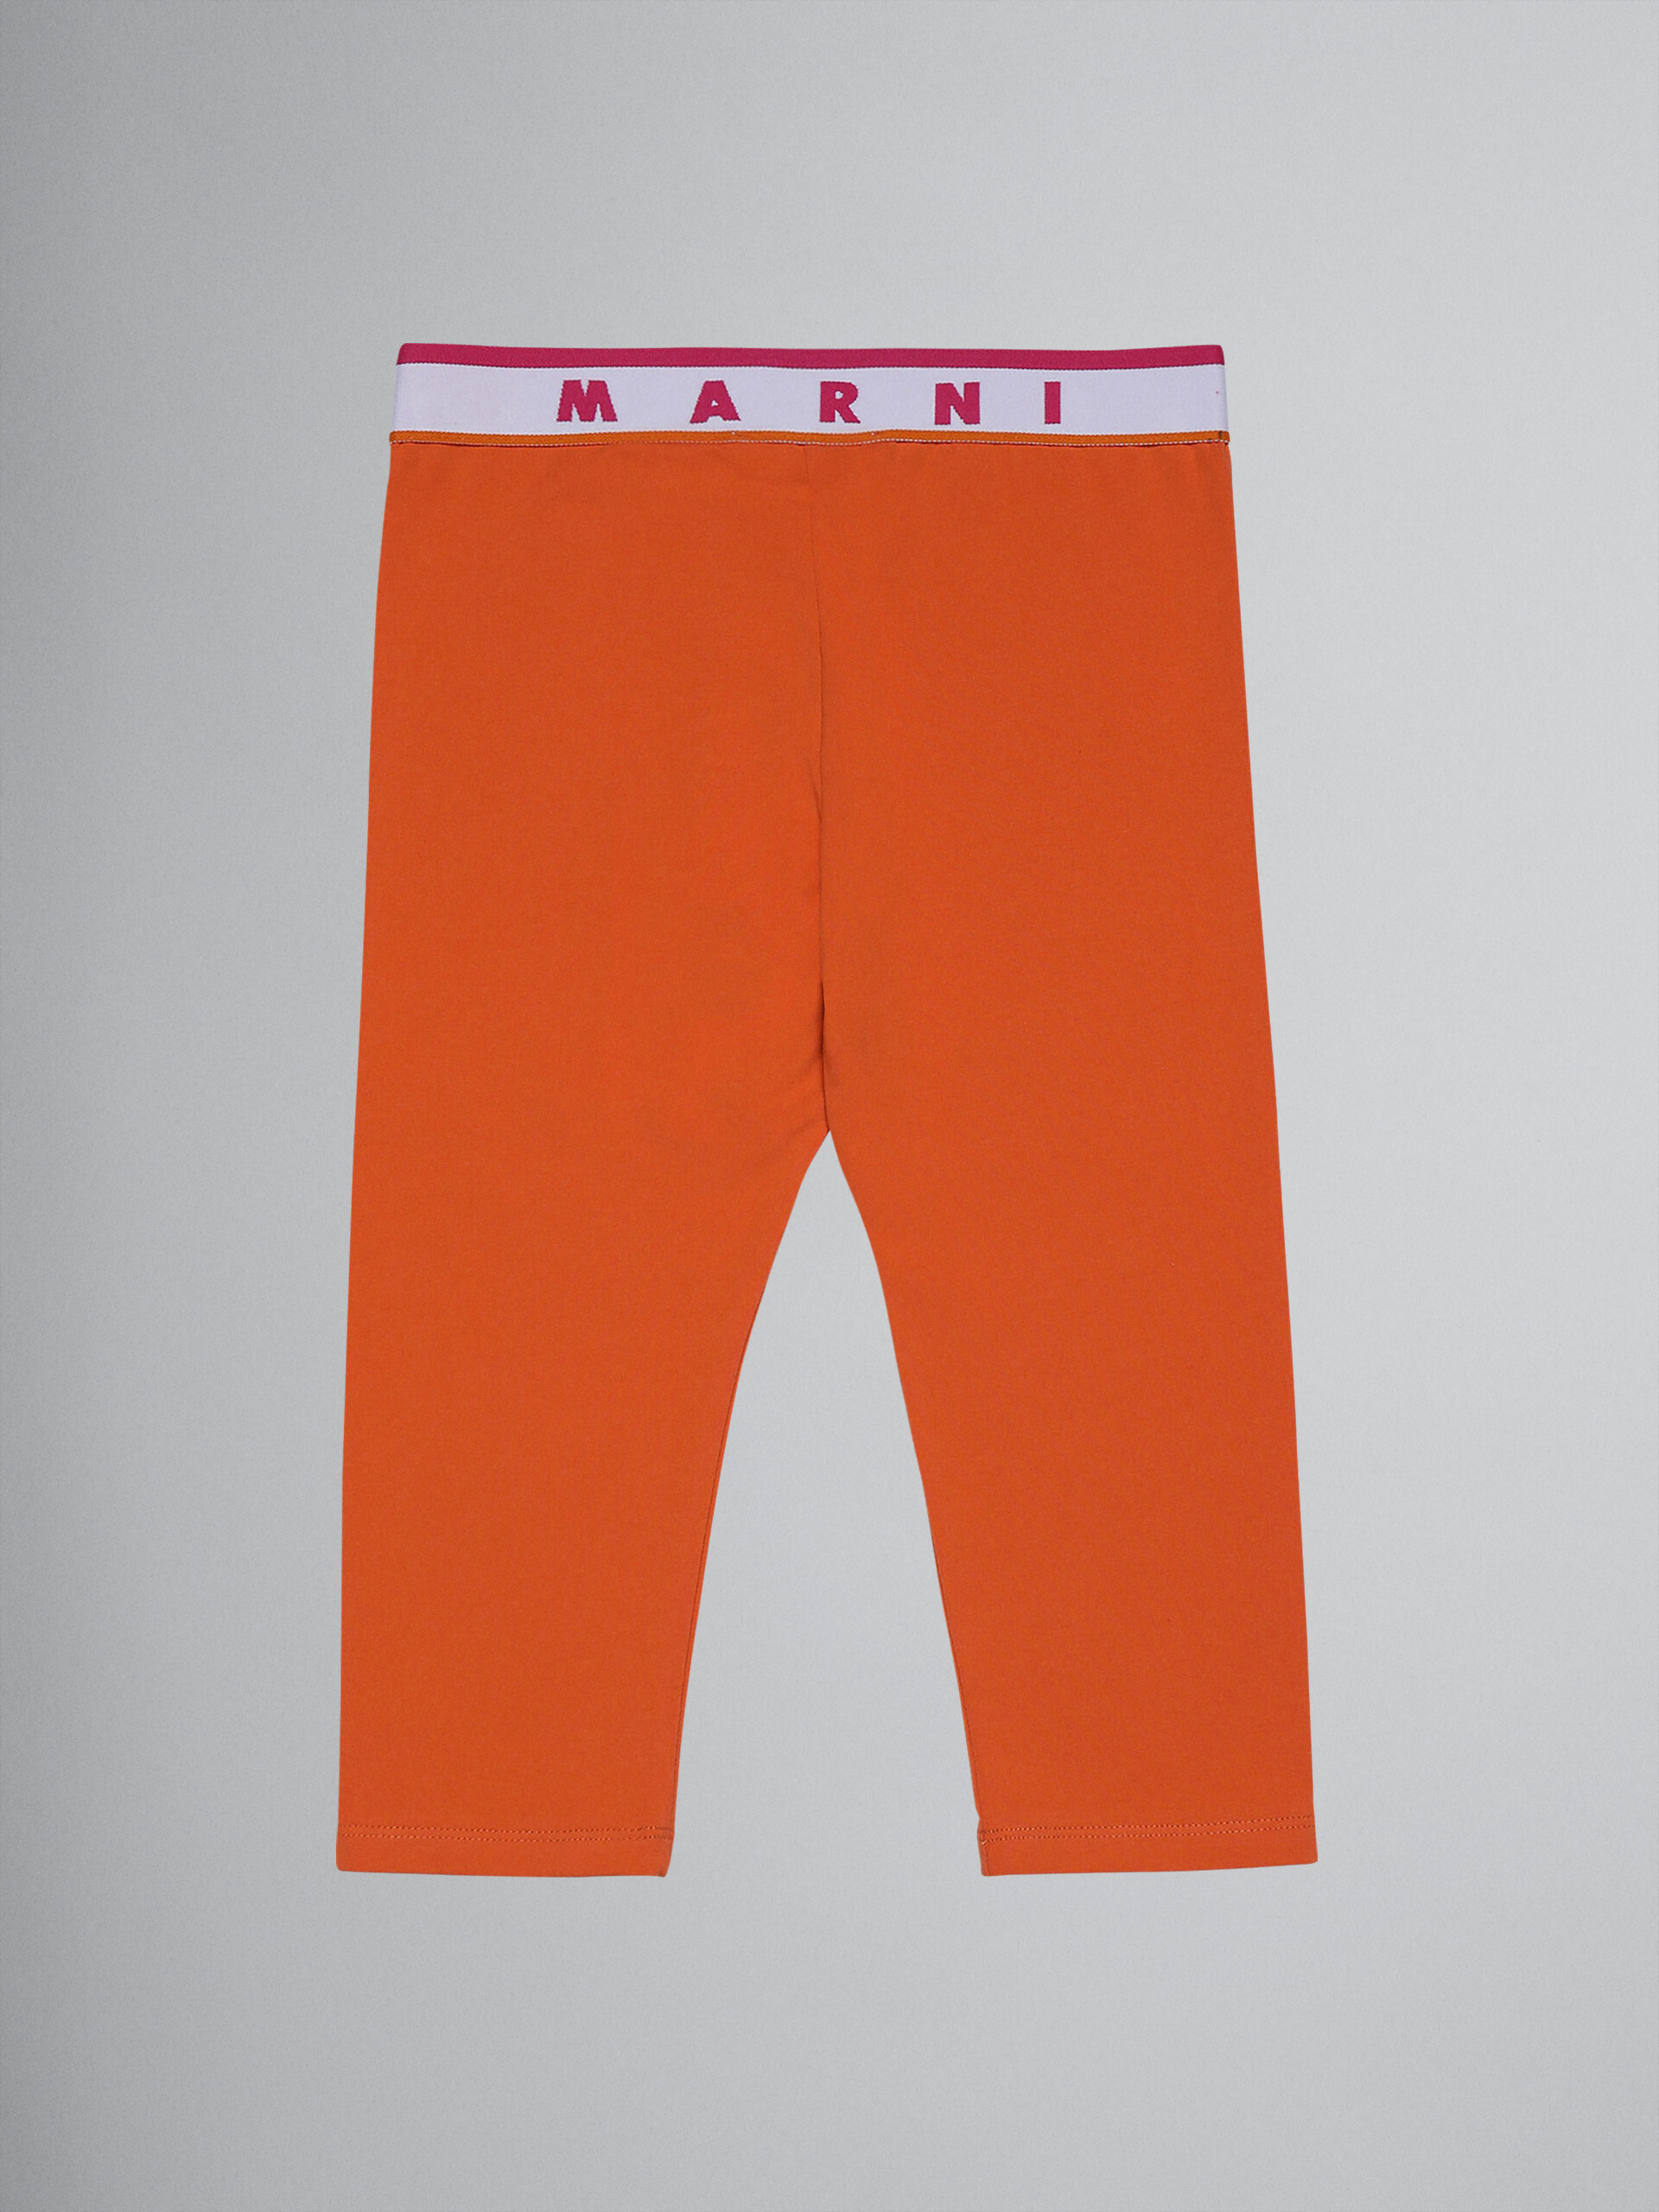 Leggings a la rodilla de jersey elástico naranja con logotipo - Pantalones - Image 2